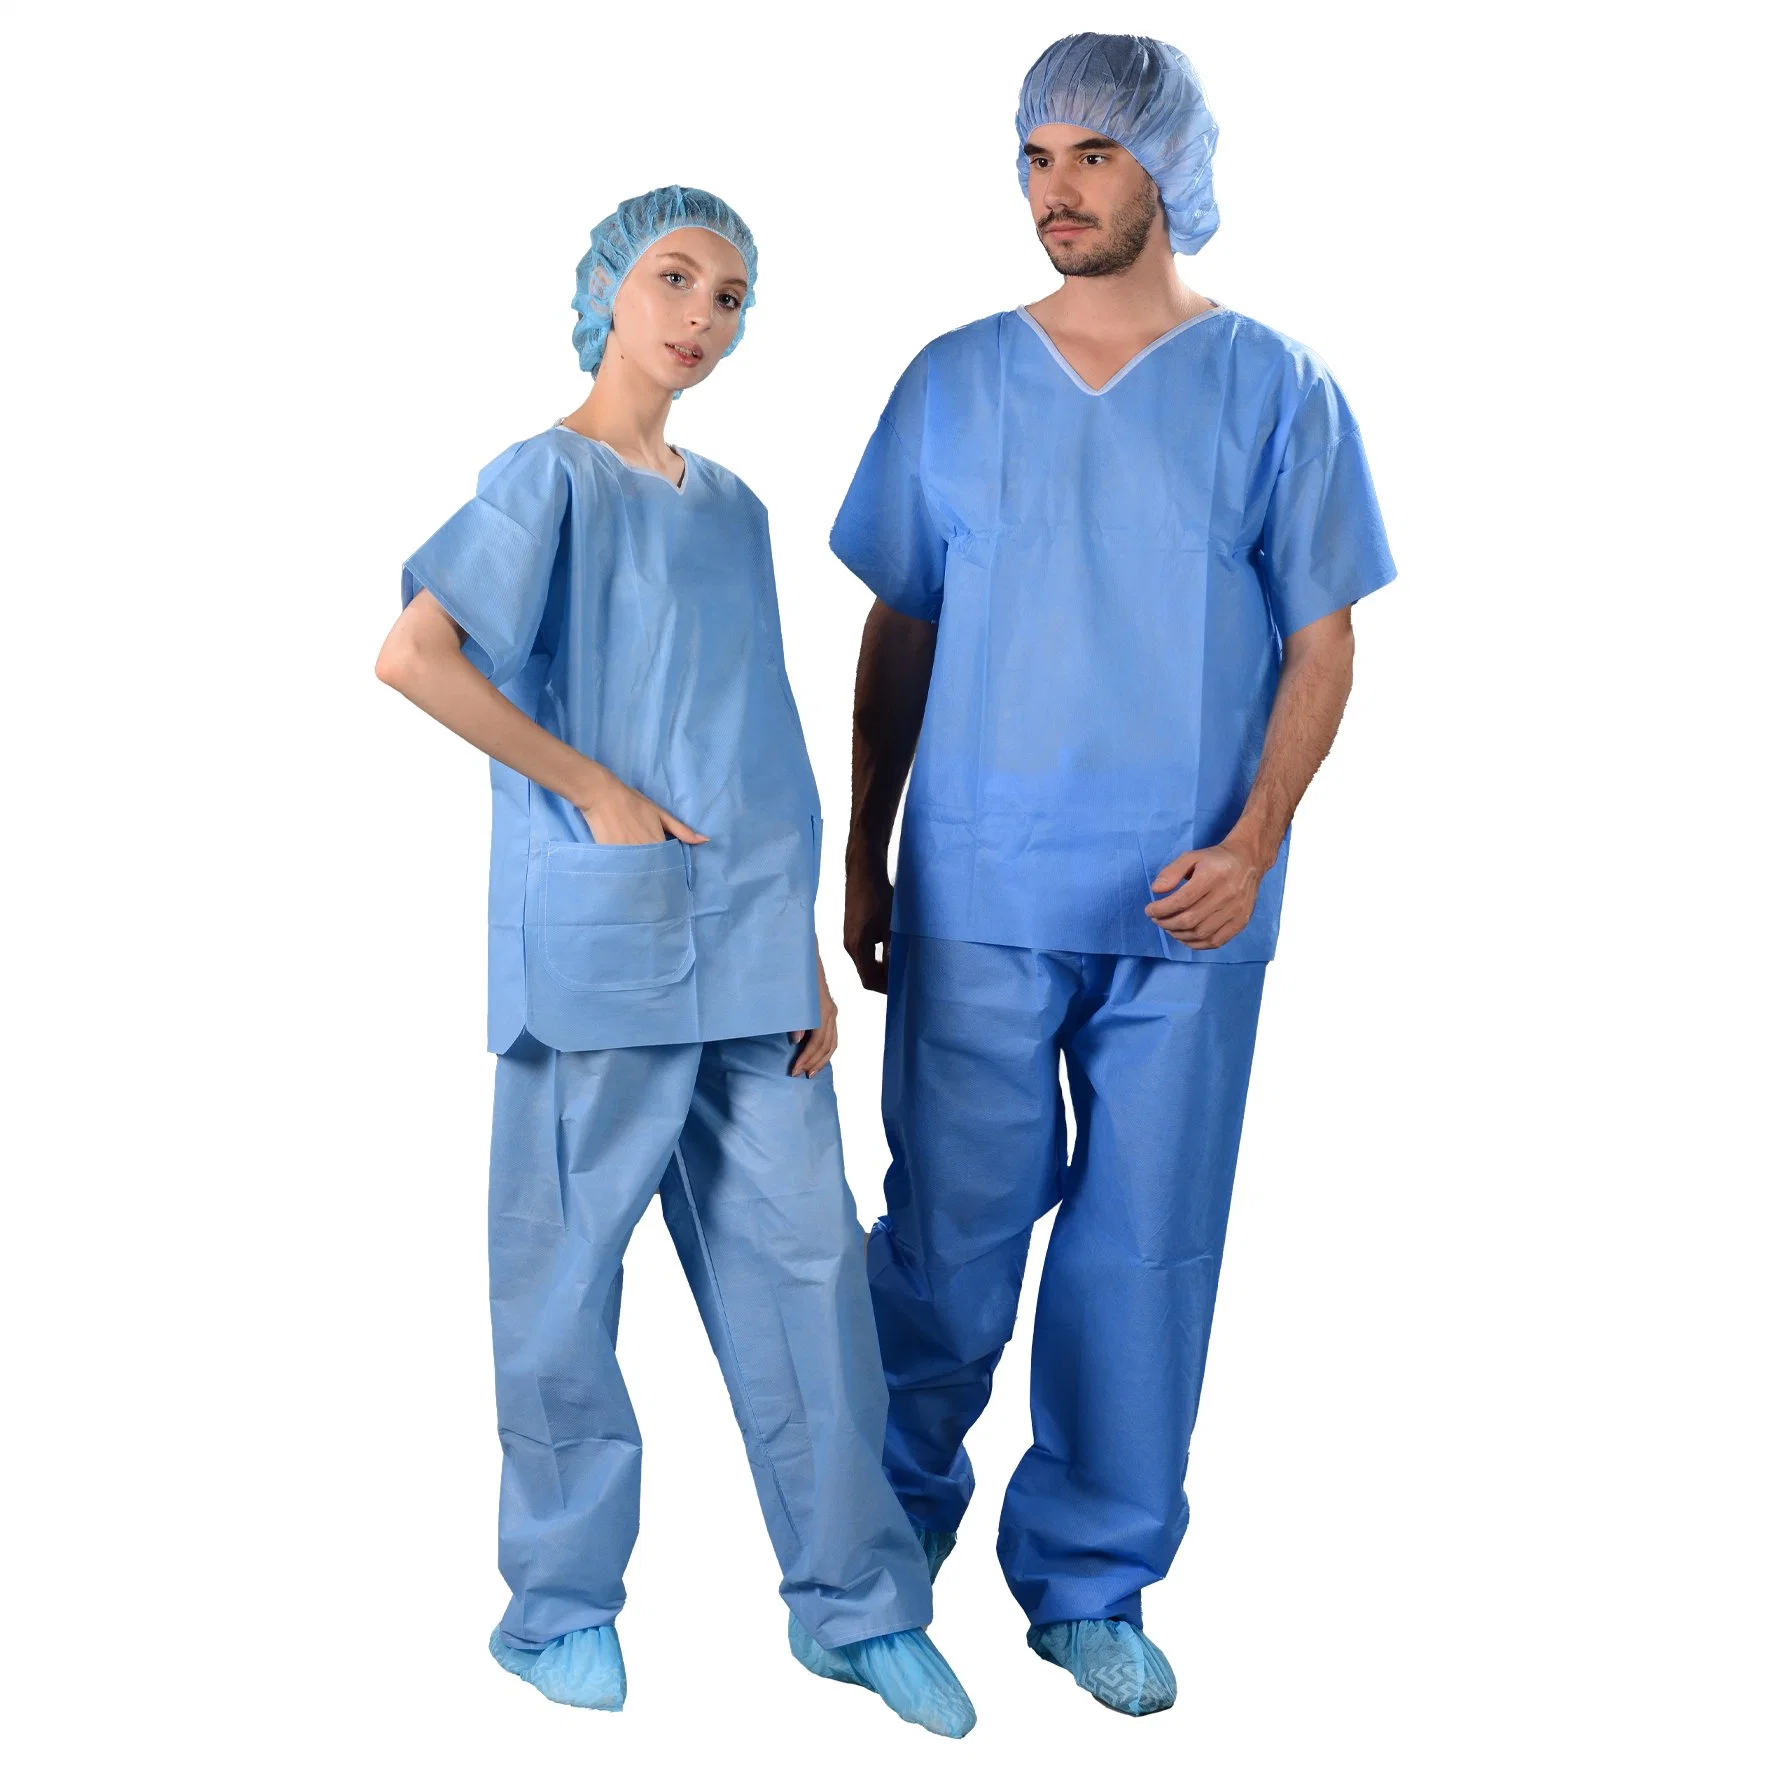 ملابس جراحيّة, بدلات جراحيّة يمكن التخلص منها